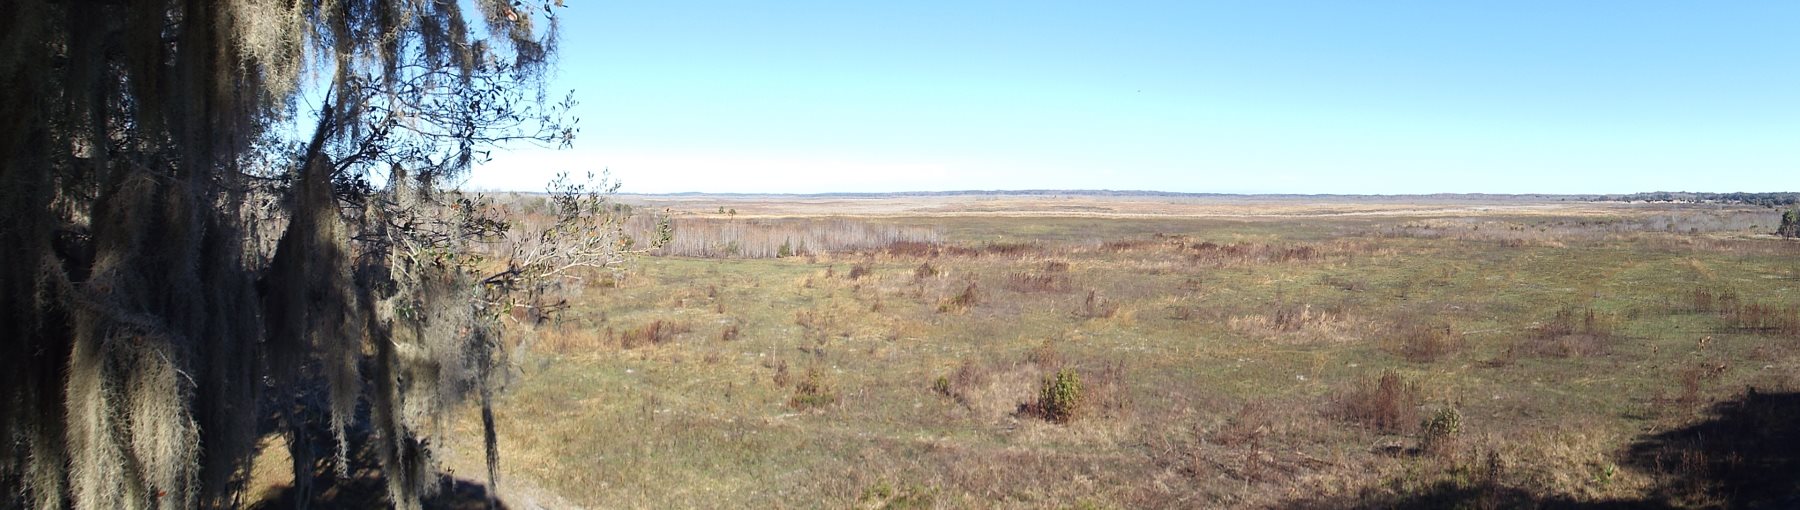 Paynes Prairie Preserve: Day One